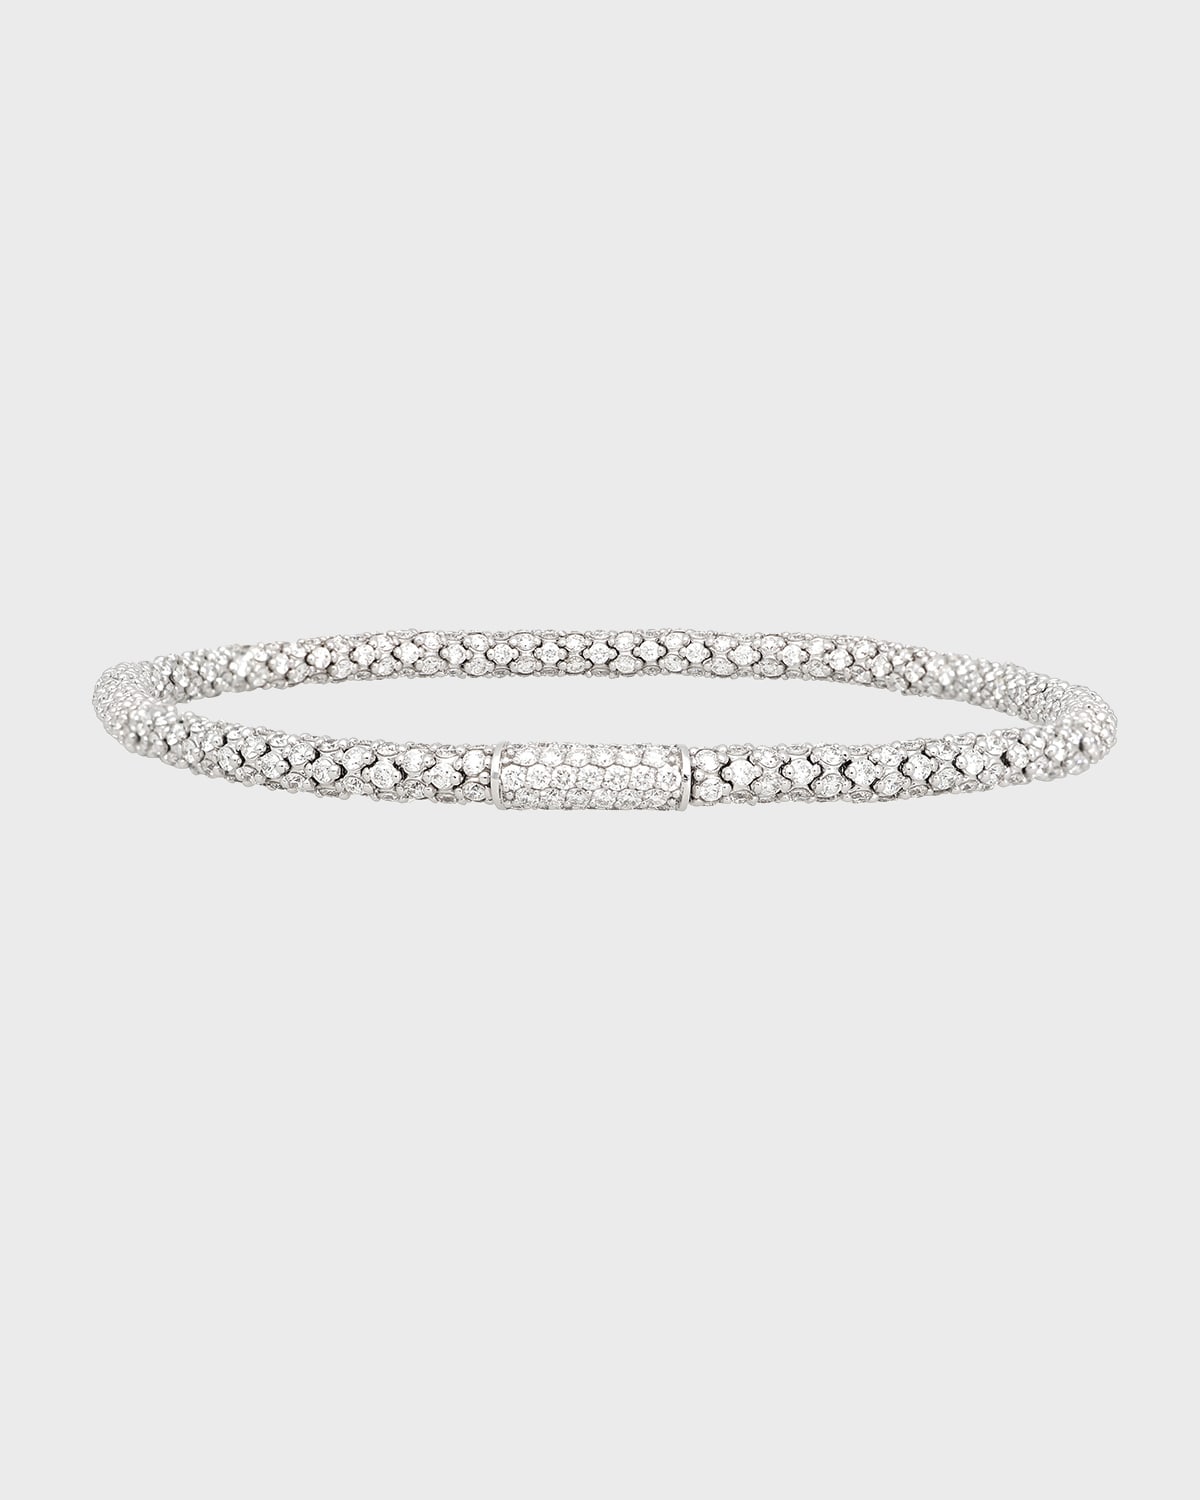 GIOCONDA 18k White Gold All-Diamond Stretch Bracelet